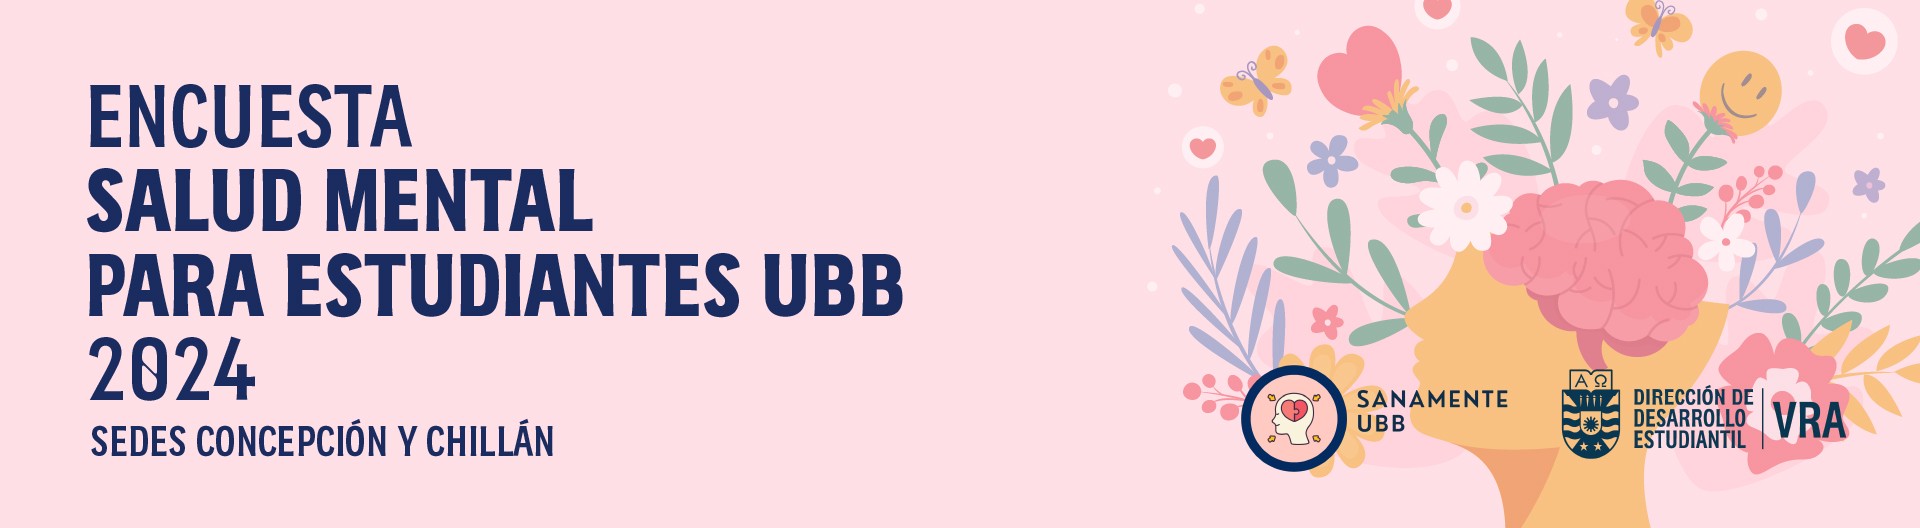 Banner UBB 1